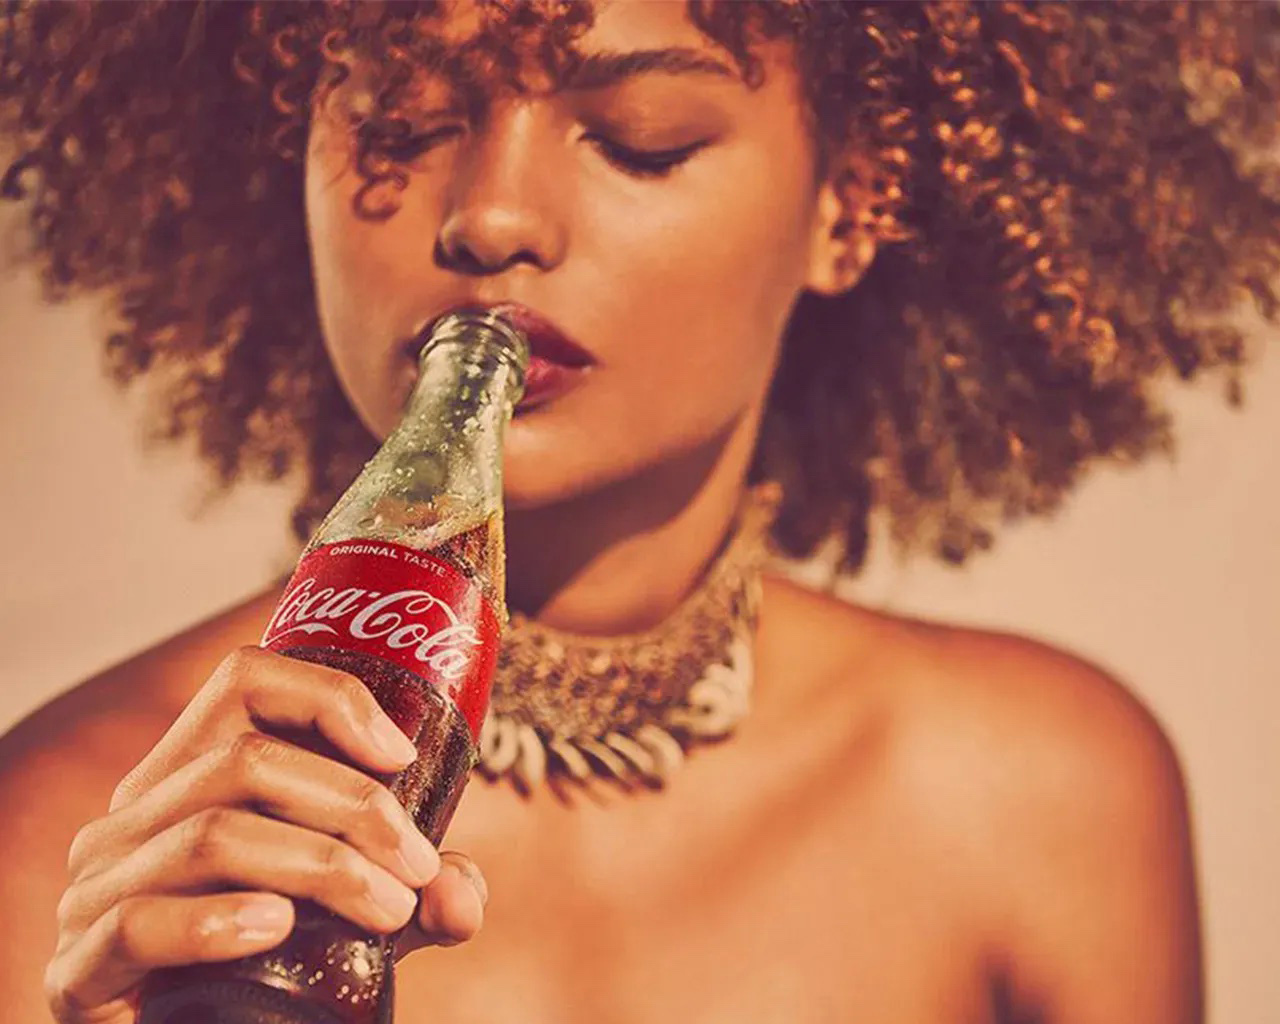 Mulher bebendo garrafa de Coca-Cola de olhos fechados